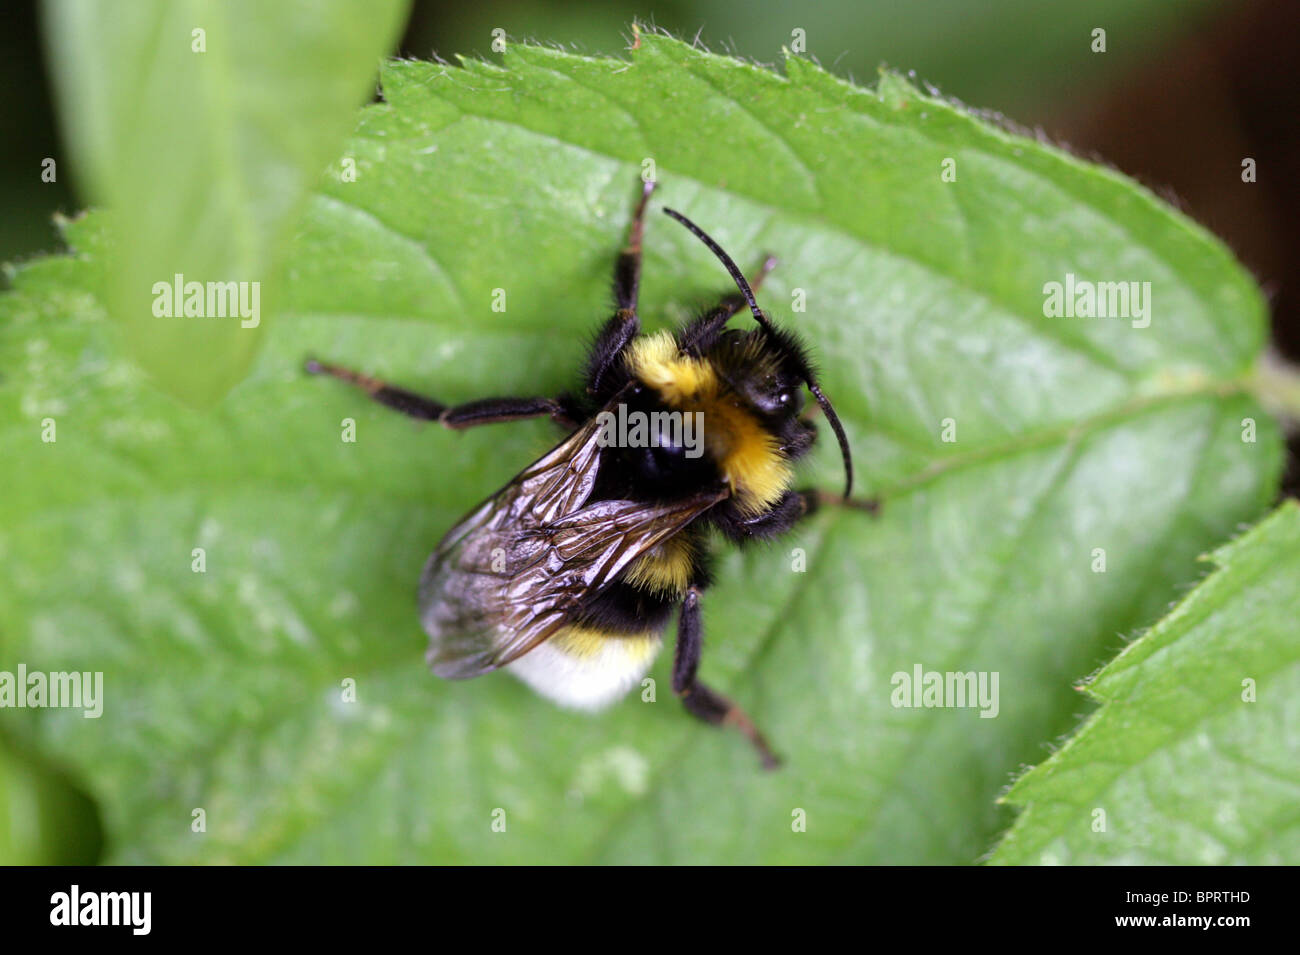 White-tailed Bumblebee, Bombus lucorum, Apinae, Apidae, Apoidea, Apocrita, Hymenoptera Stock Photo